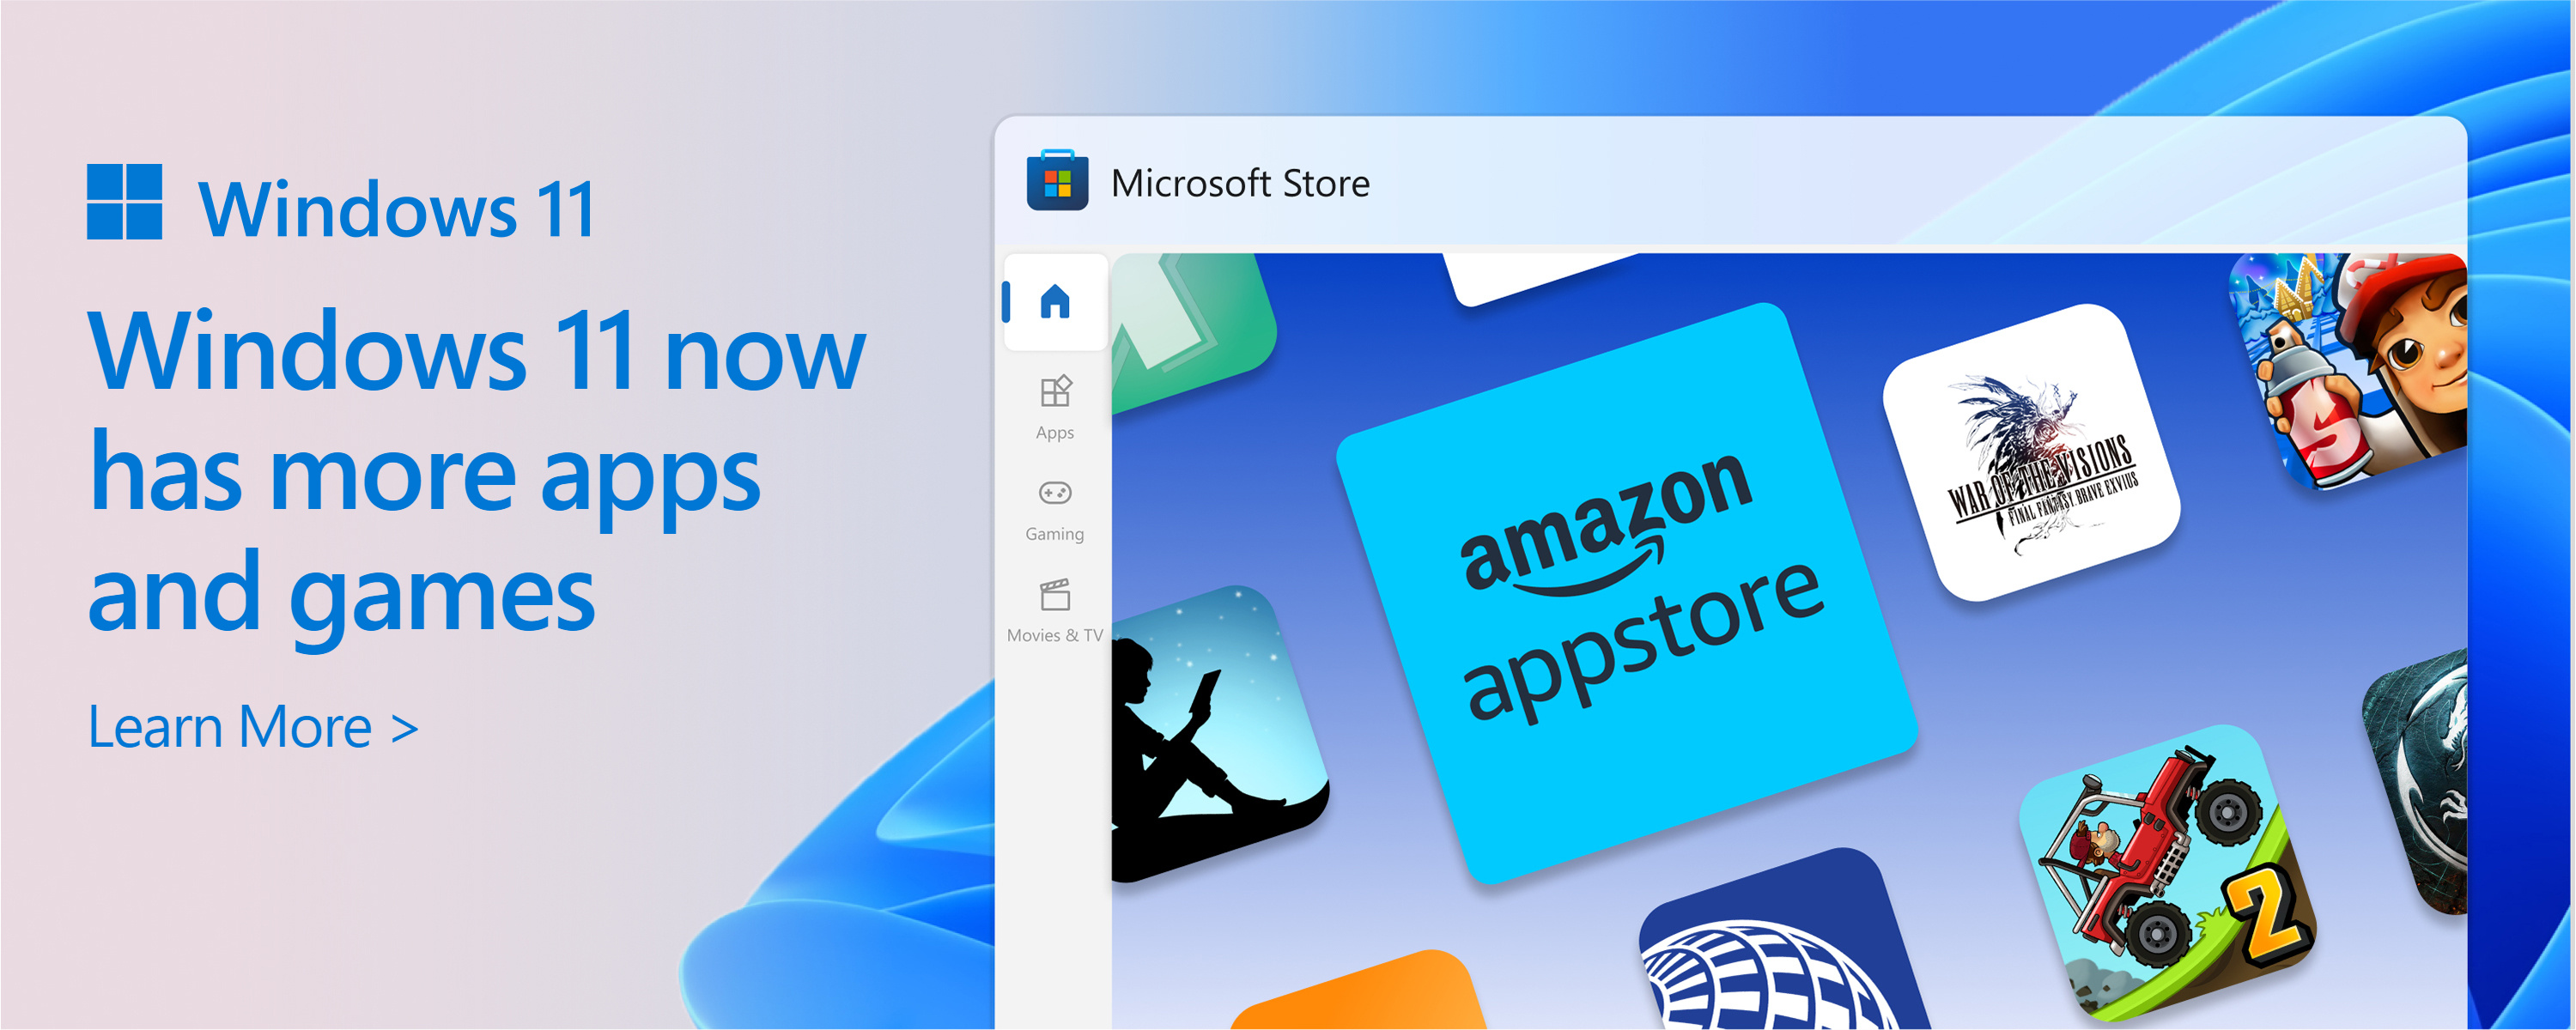 Екранна снимка на Microsoft Store с текста: Каталогът на Microsoft Store се разраства. Windows 11 ви дава повече от приложенията и игрите, от които се нуждаете.